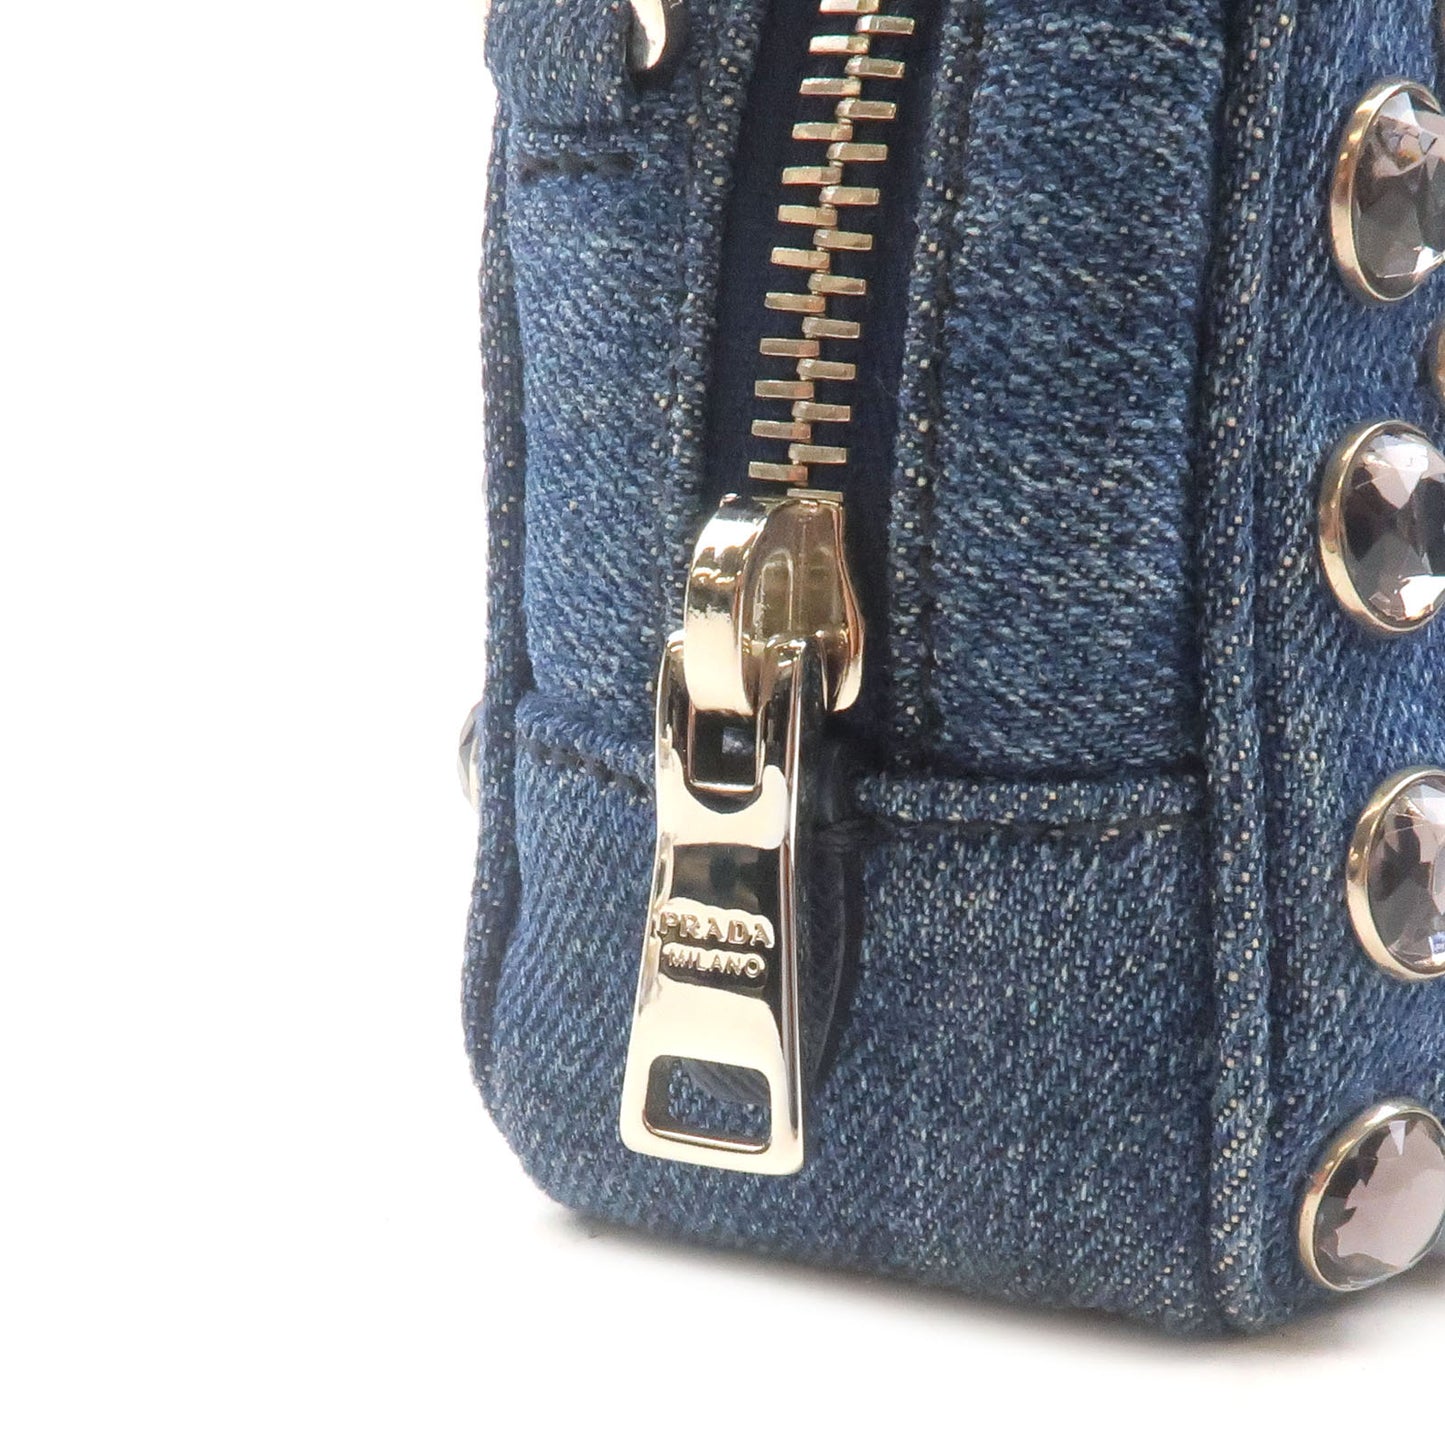 PRADA Bijou Denim Leather Shoulder Bag DENIM Blue 1NF674